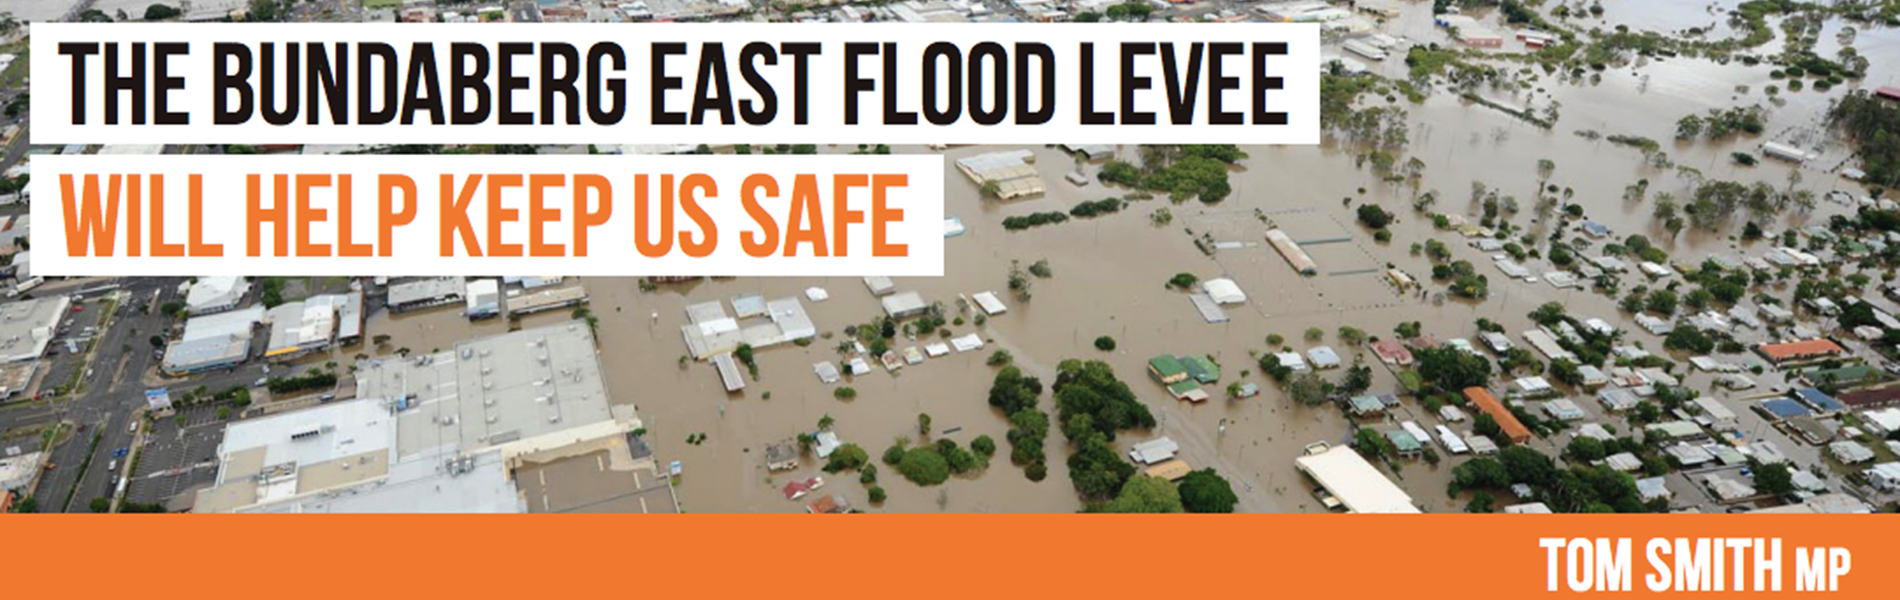 Build The Bundaberg East Flood Levee